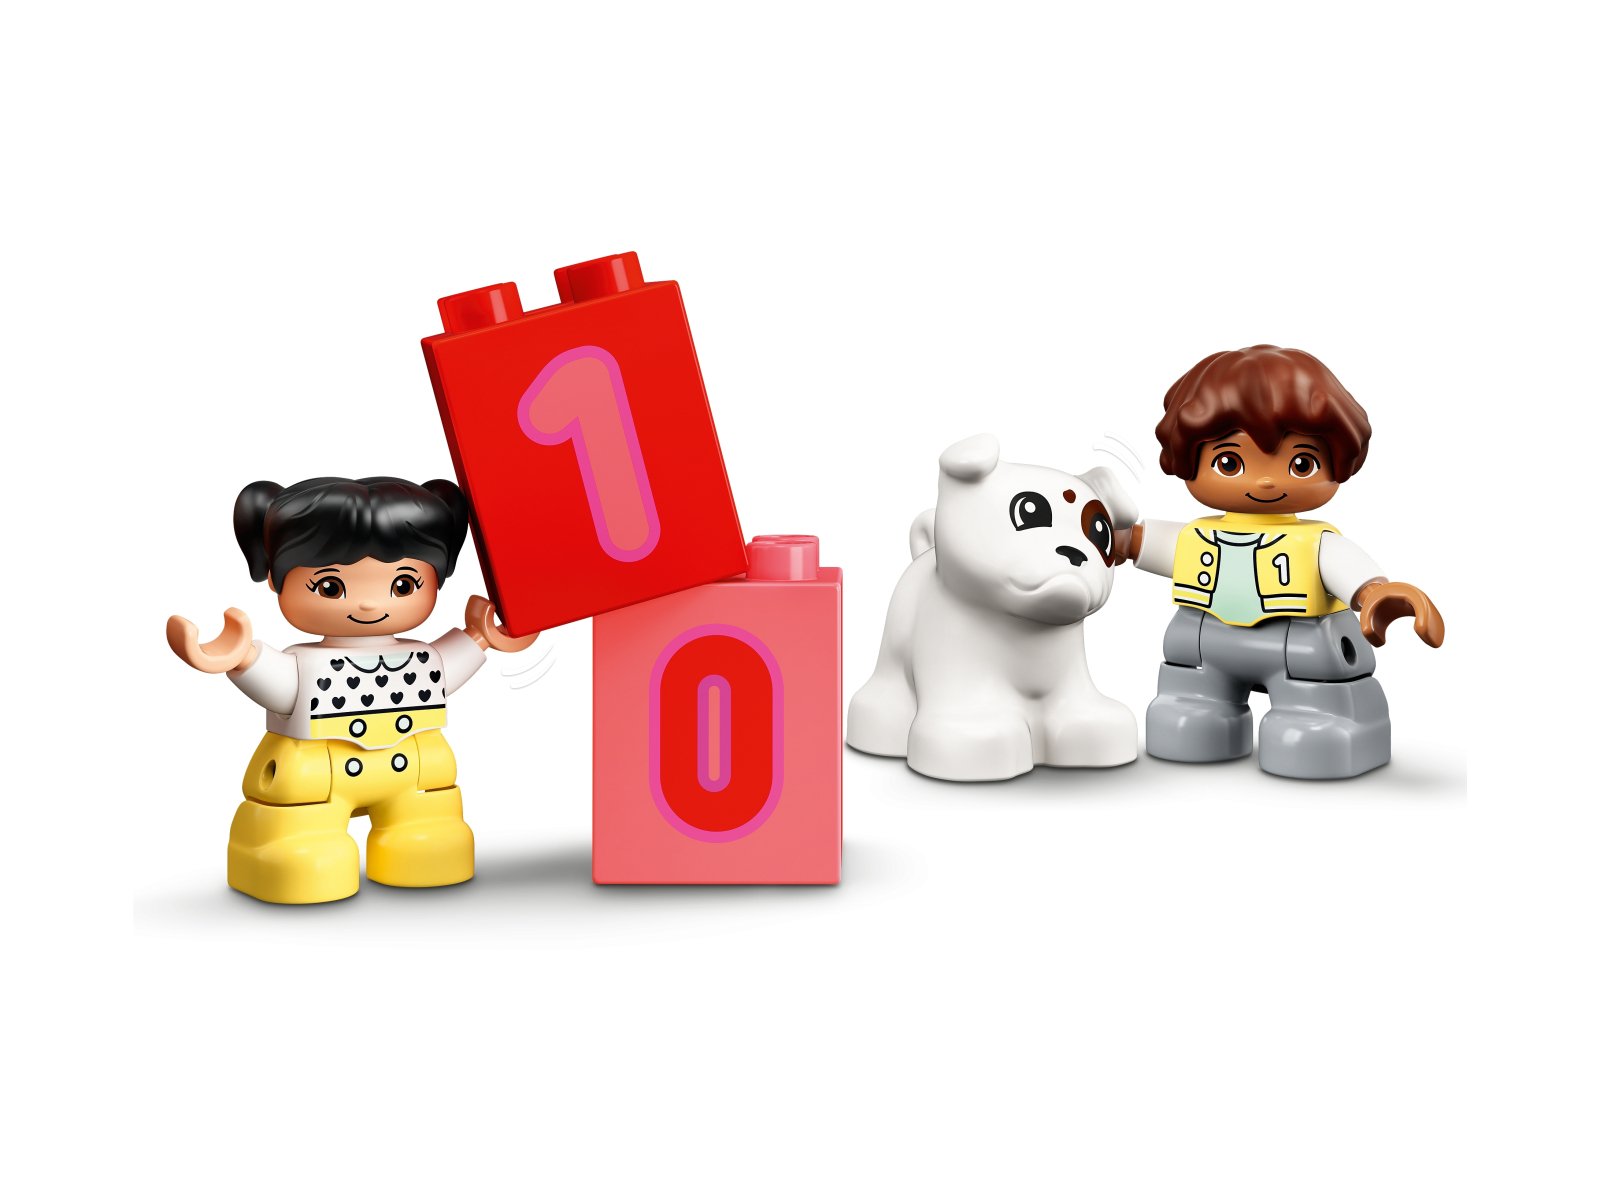 LEGO 10954 Duplo Pociąg z cyferkami — nauka liczenia